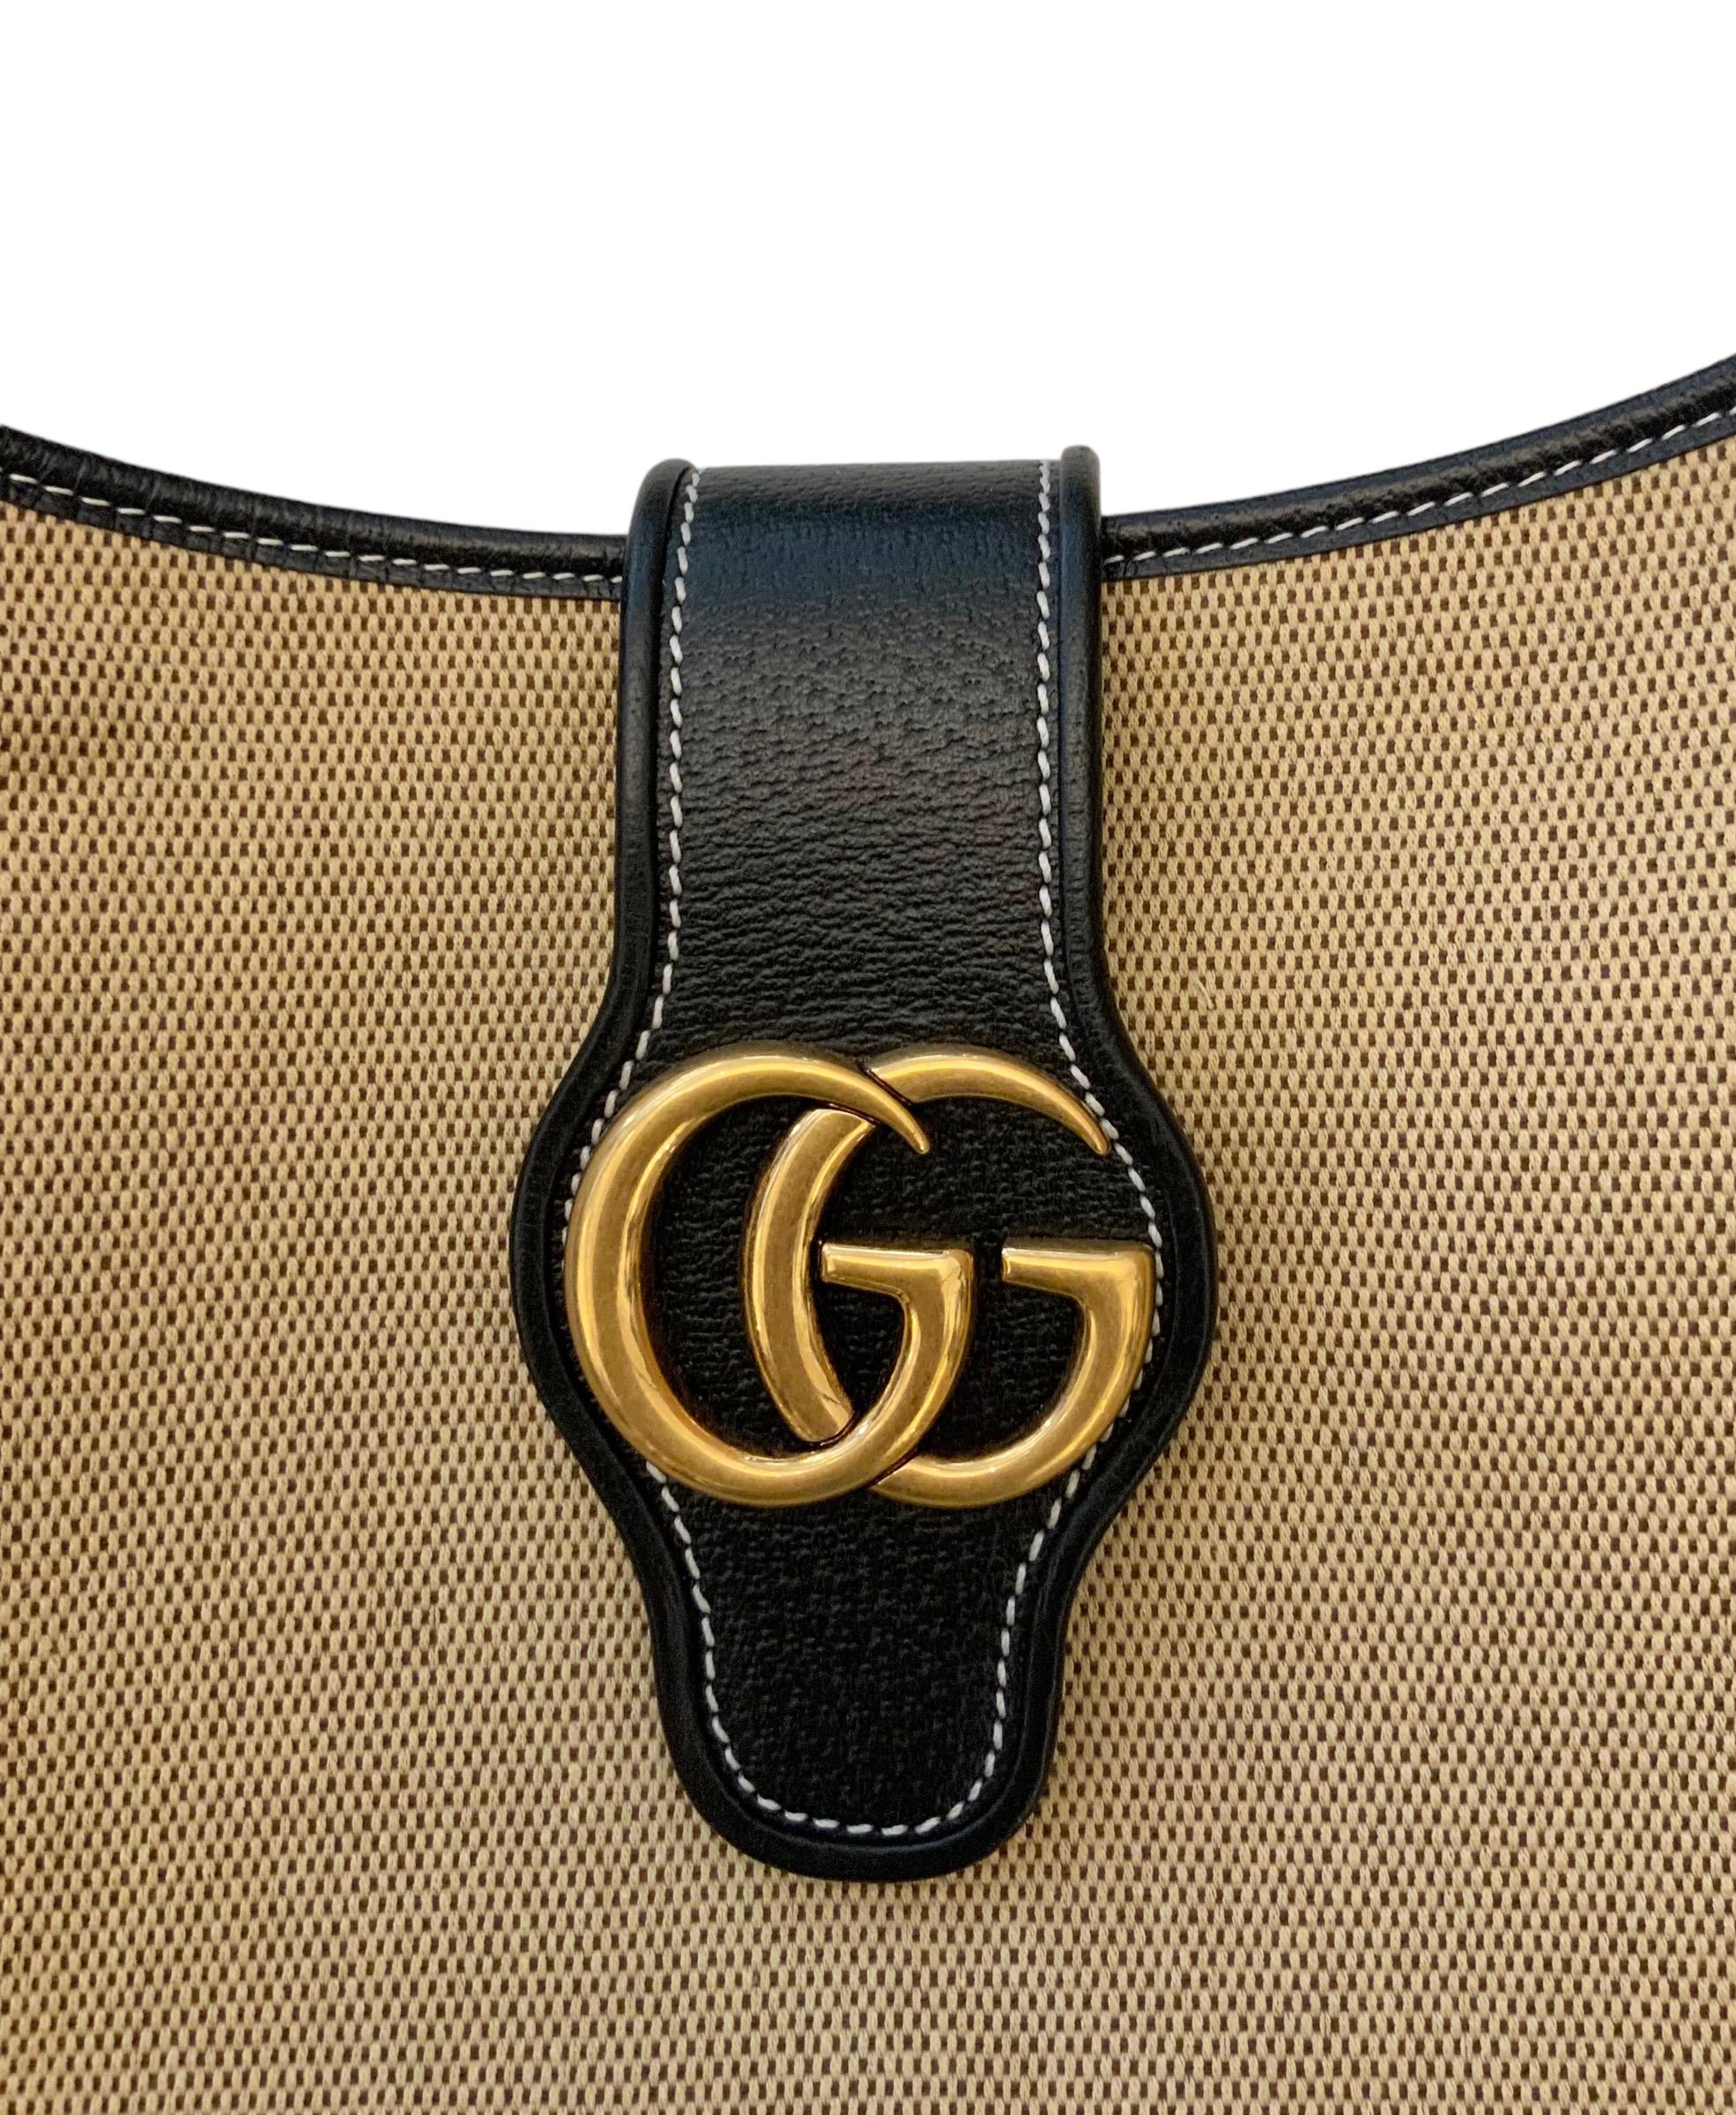 Diese große Version der Aphrodite Tasche aus Canvas und glattem Kalbsleder ist Teil der Cosmogonie Kollektion von Gucci.
Auf der Vorderseite befindet sich die charakteristische Double-G-Plakette, die ursprünglich in den 1970er Jahren eingeführt